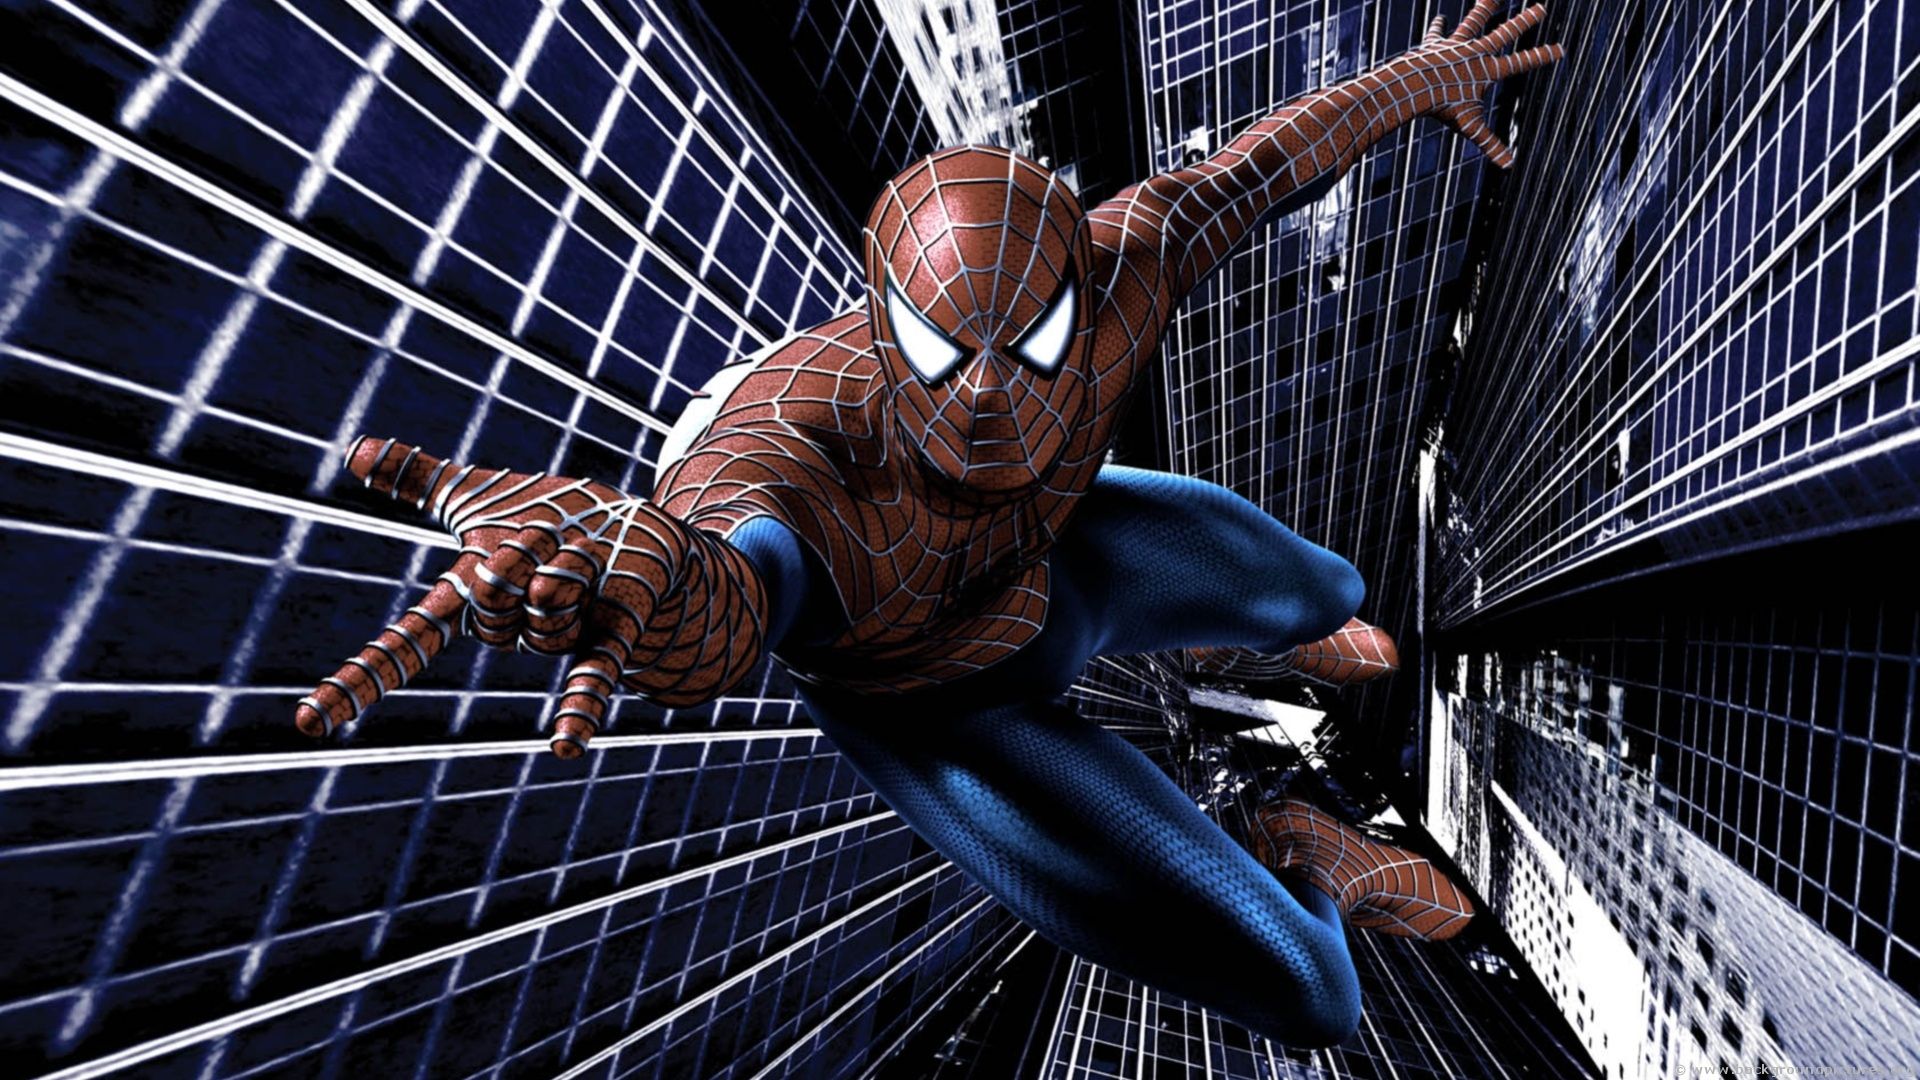 Spiderman HD Wallpaper | 1920x1080 | ID:30454